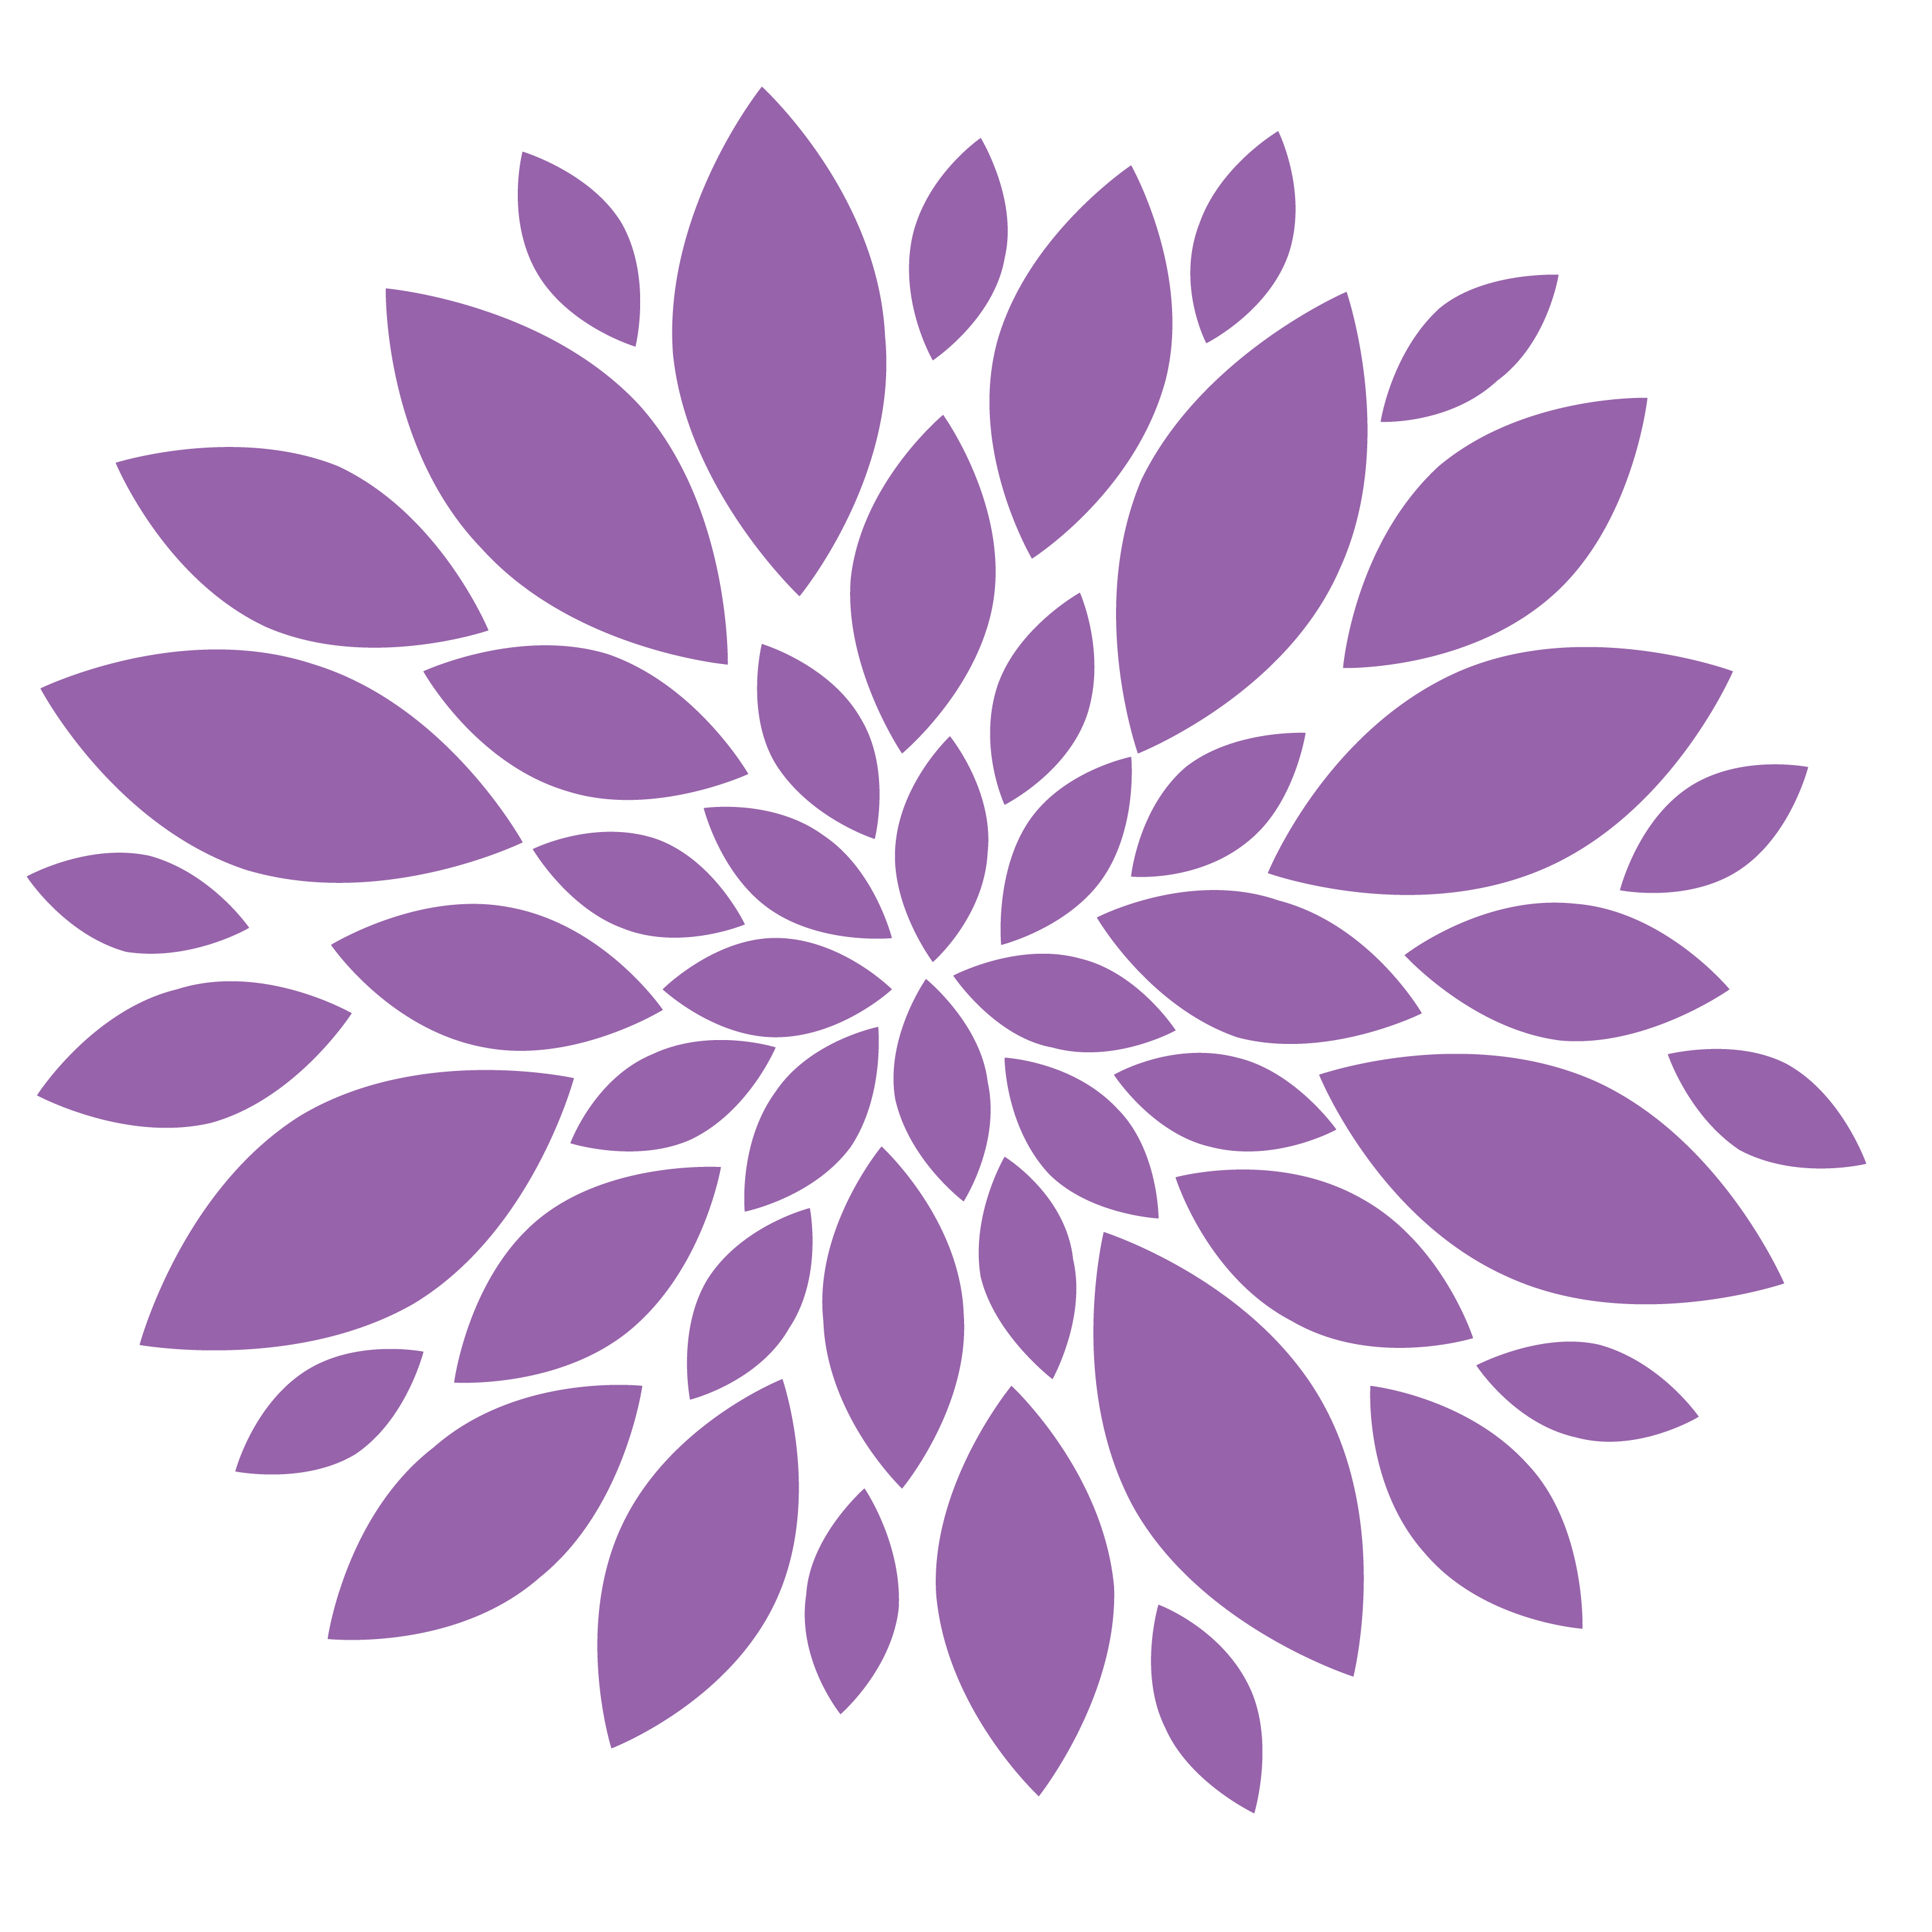 Chrysanthemum Image PNG Image